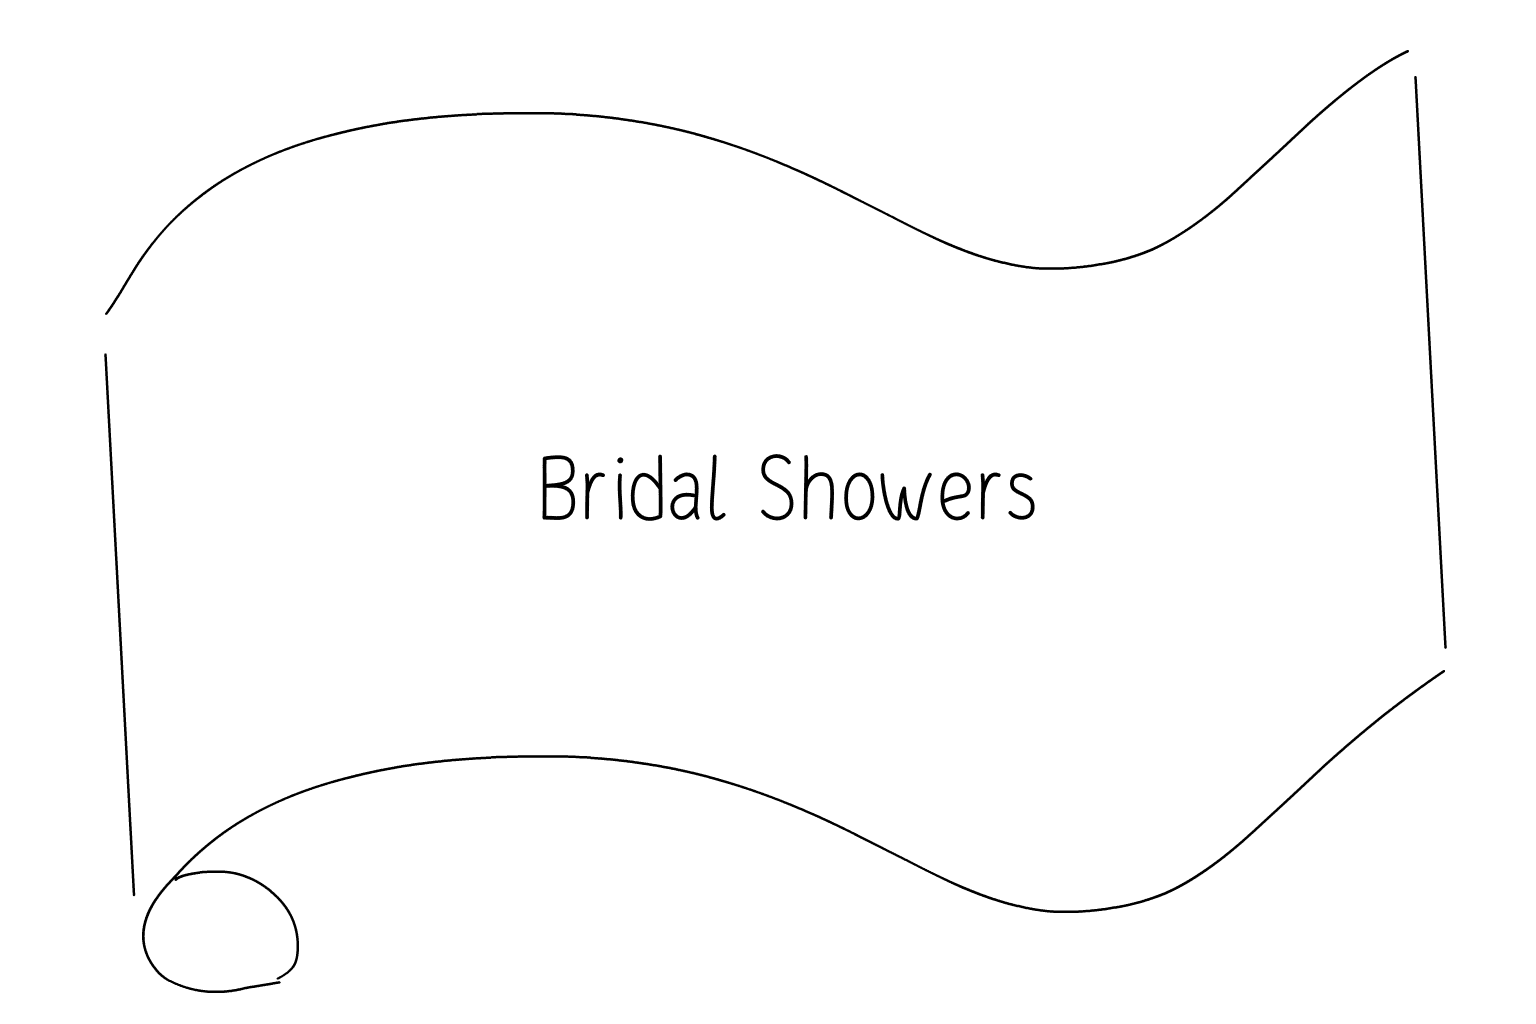 Illustration von Anbieter von Brautduschen